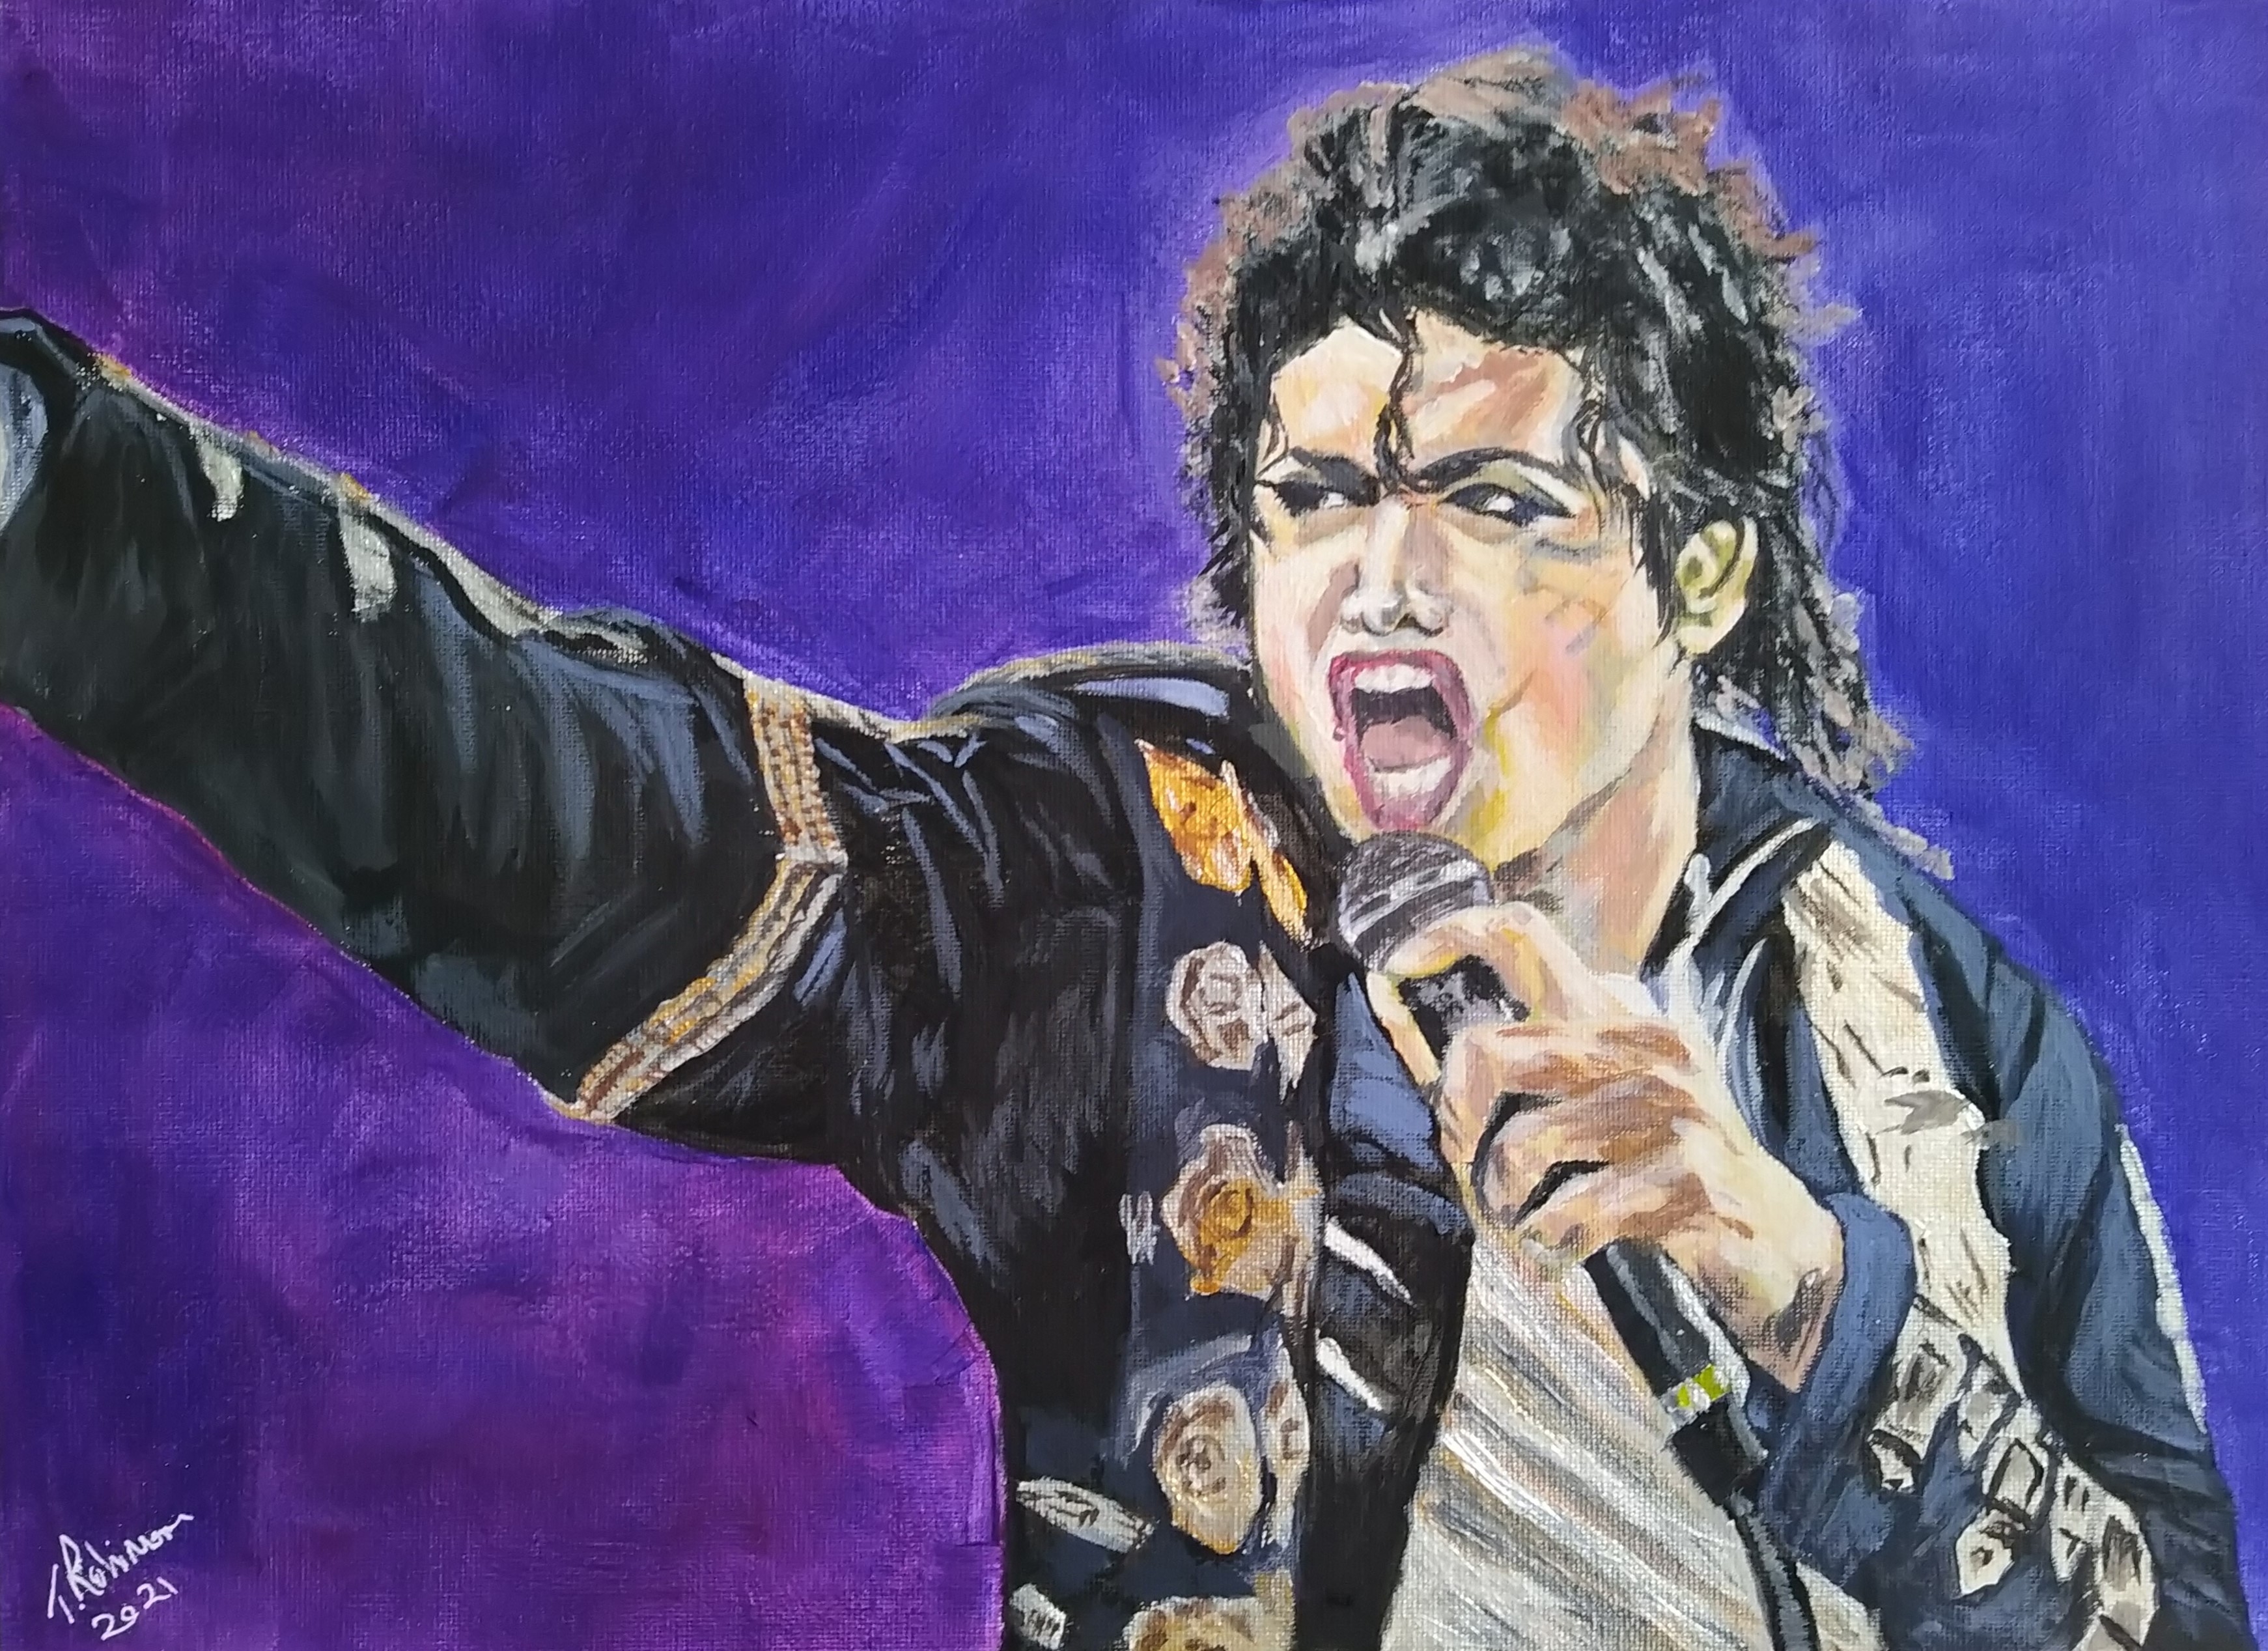 Michael Jackson Singing